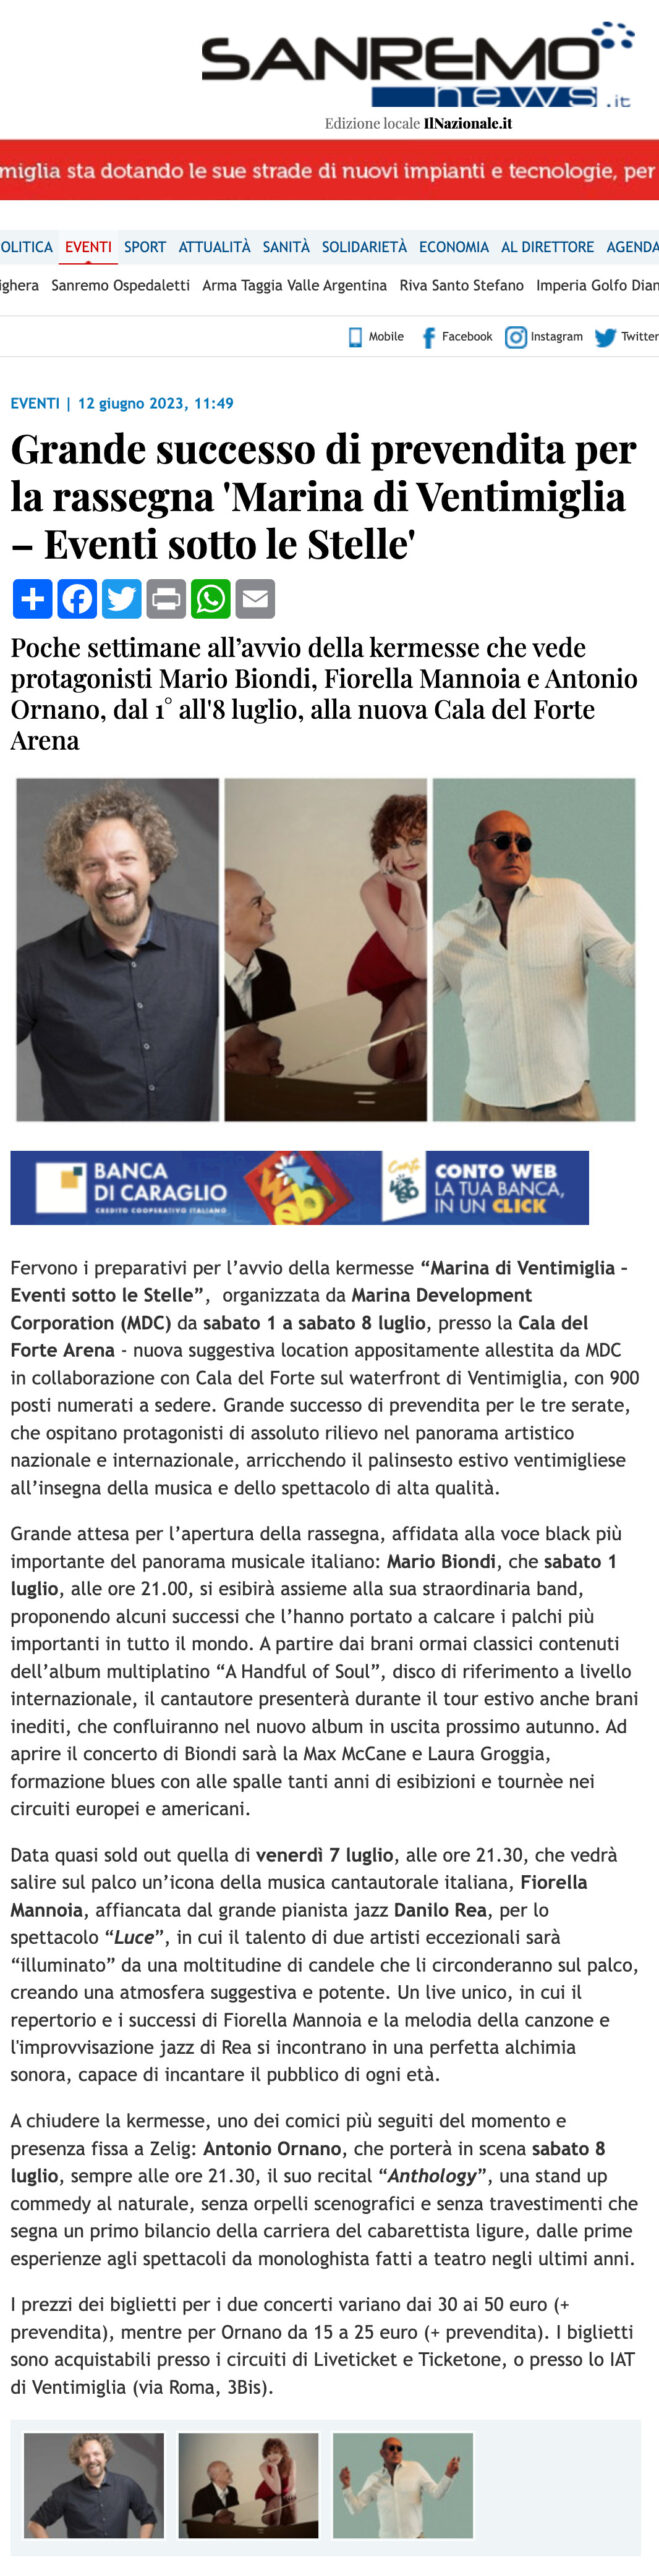 Sanremo-news-Eventi sotto le Stelle